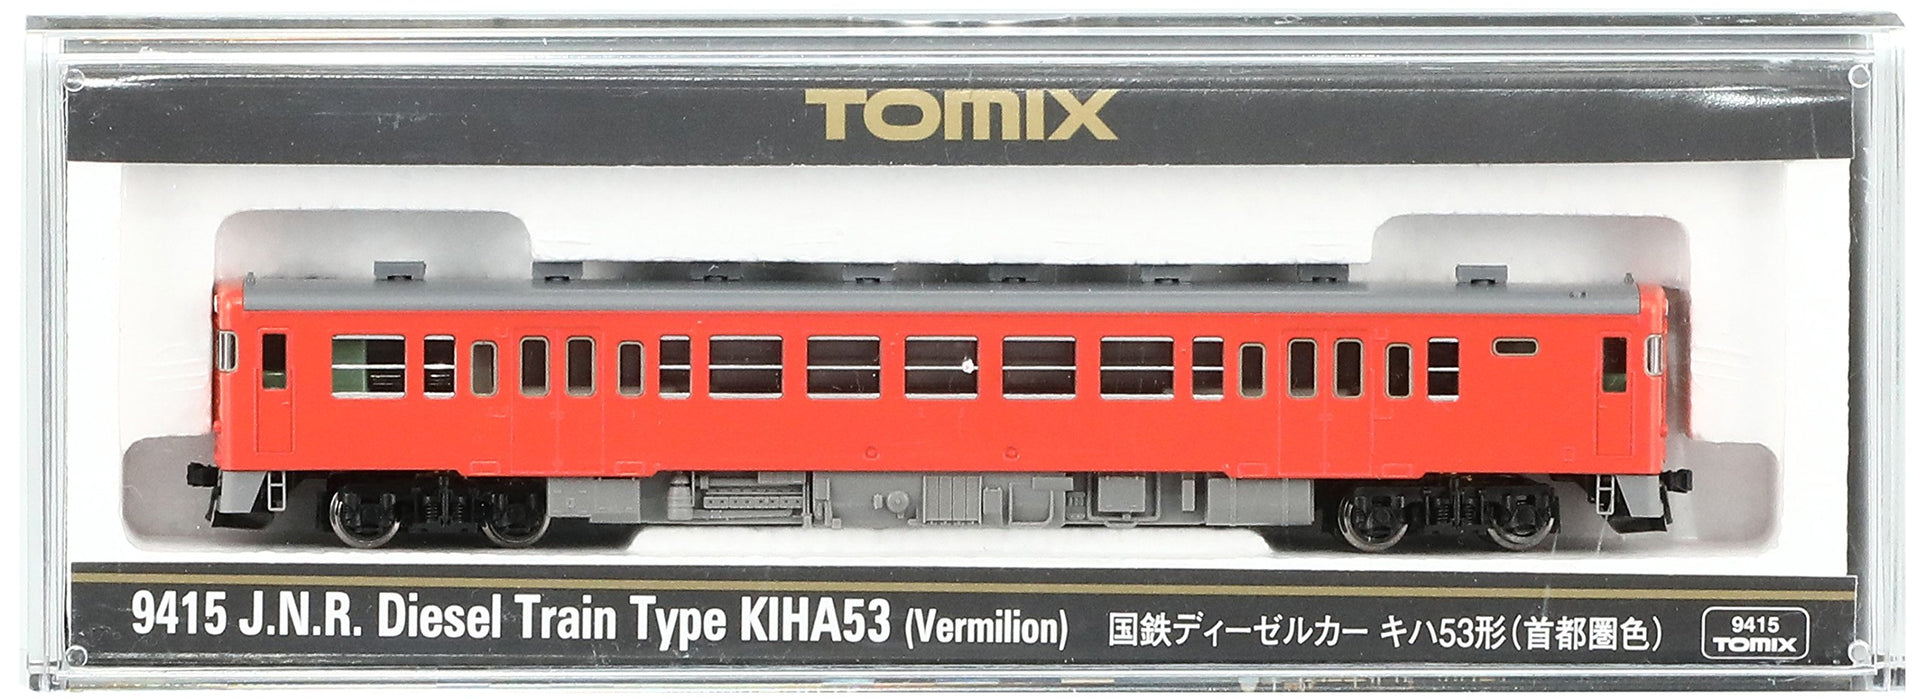 Tomytec Tomix N Gauge Kiha53 Diesel Car - Railway Model in Metropolitan Area Color